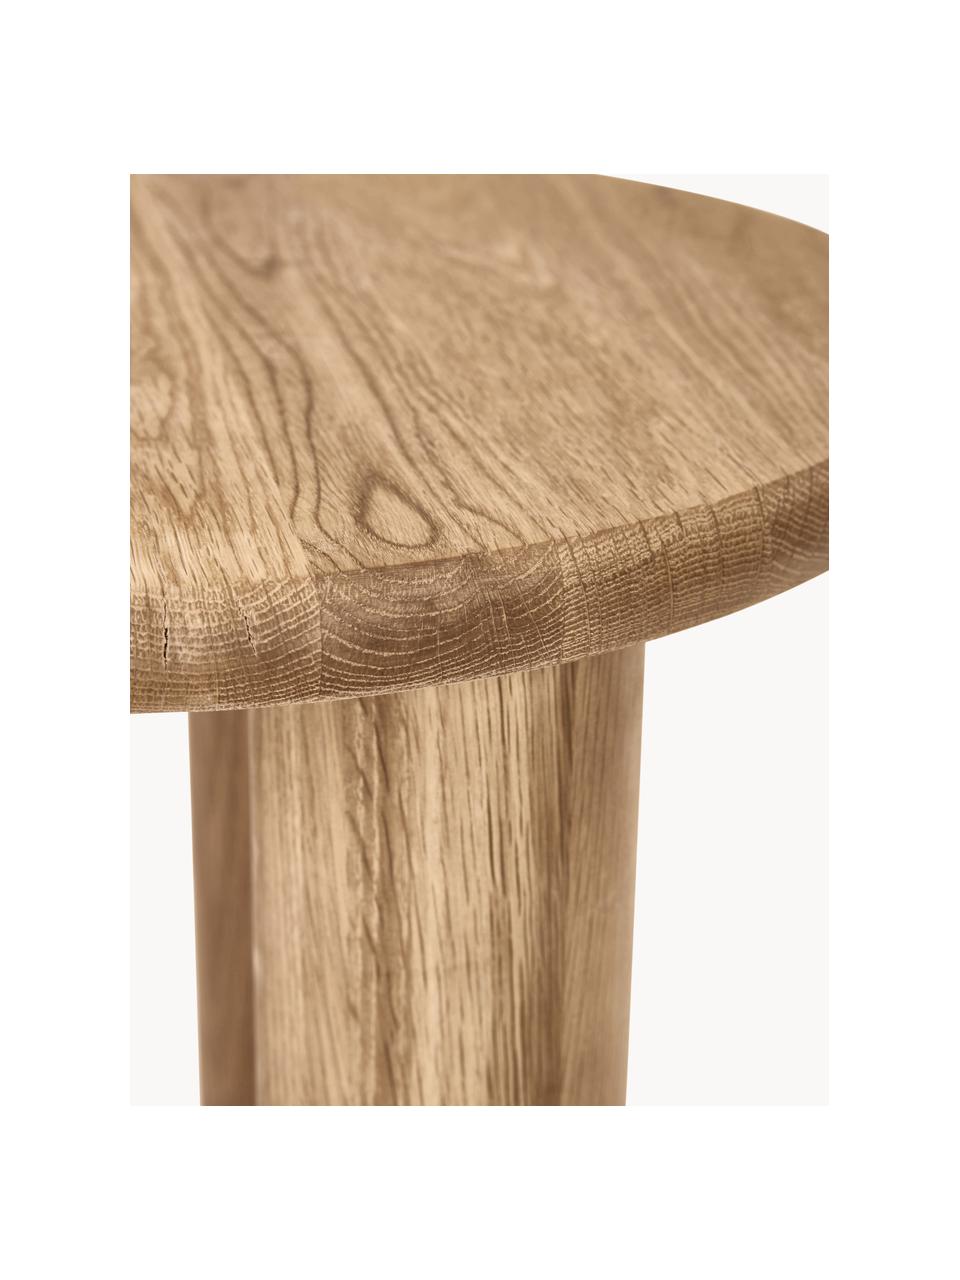 Dubový odkládací stolek Didi, Masivní dubové dřevo, olejované

Tento produkt je vyroben z udržitelných zdrojů dřeva s certifikací FSC®., Dubové dřevo, Ø 40 cm, V 45 cm